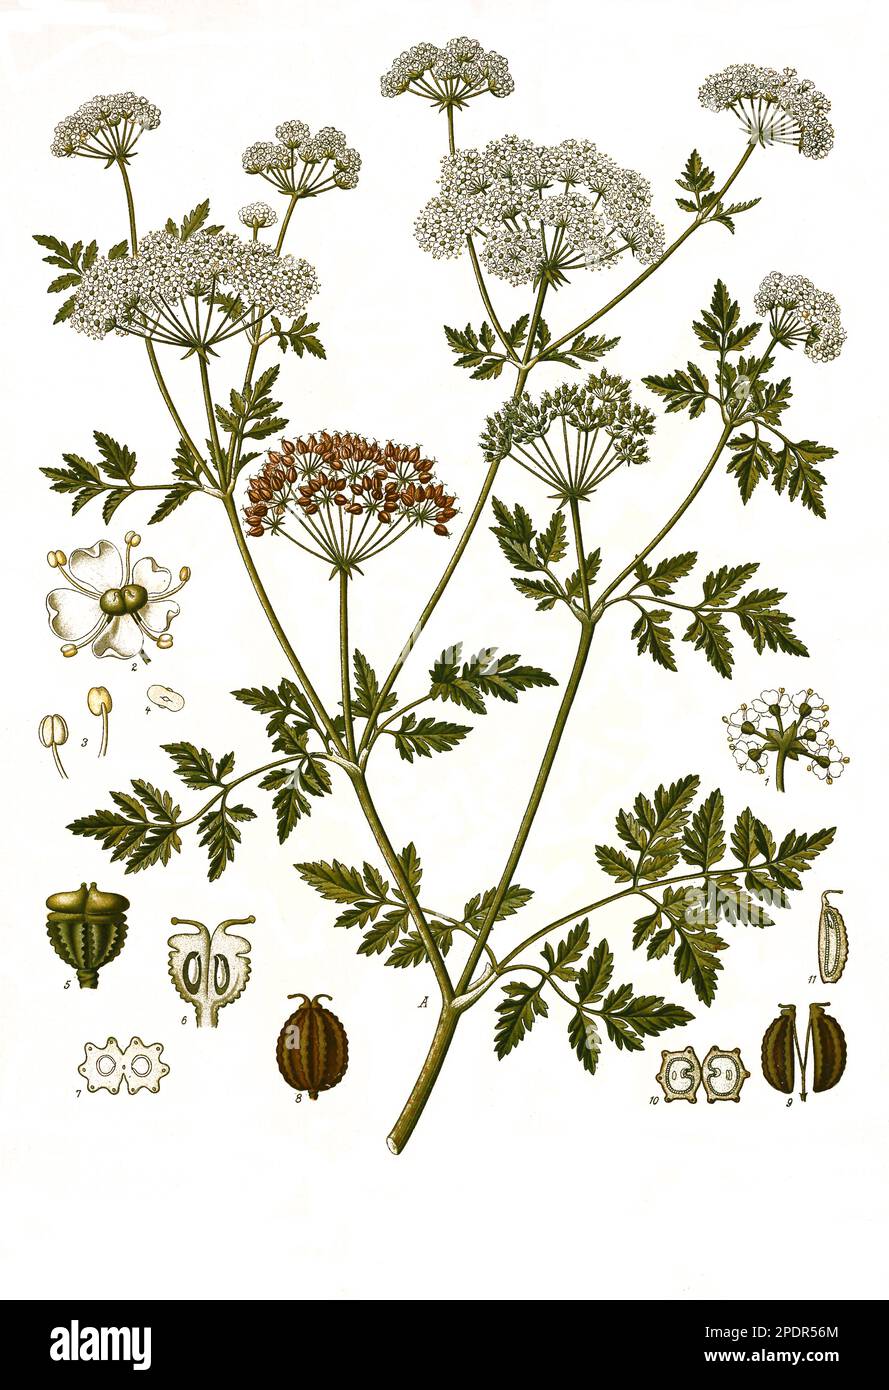 Heilpflanze, Gefleckte Schierling (Conium maculatum) ist eine Pflanzenart aus der Familie der Doldenblütler, Historisch, digital restaurierte Reproduktion von einer Vorlage aus dem 19. Jahrhundert, Stock Photo